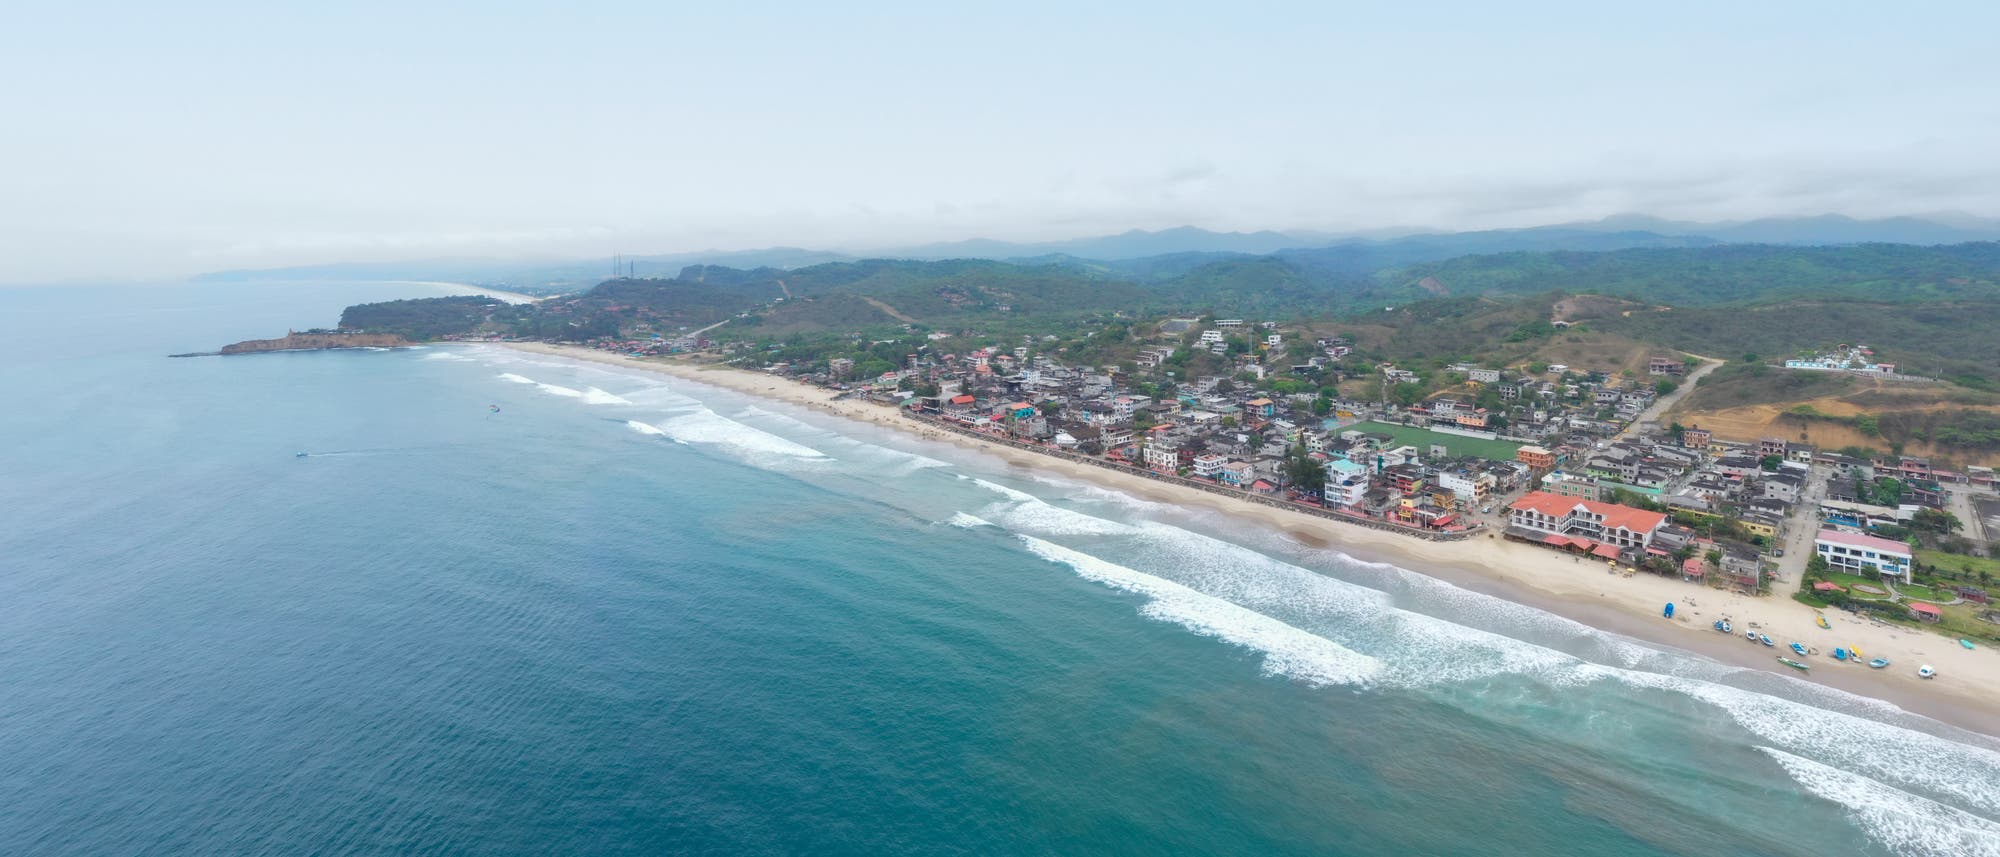 Luftaufnahme von Montanita, einem berühmten Touristenziel an der Küste Ecuadors